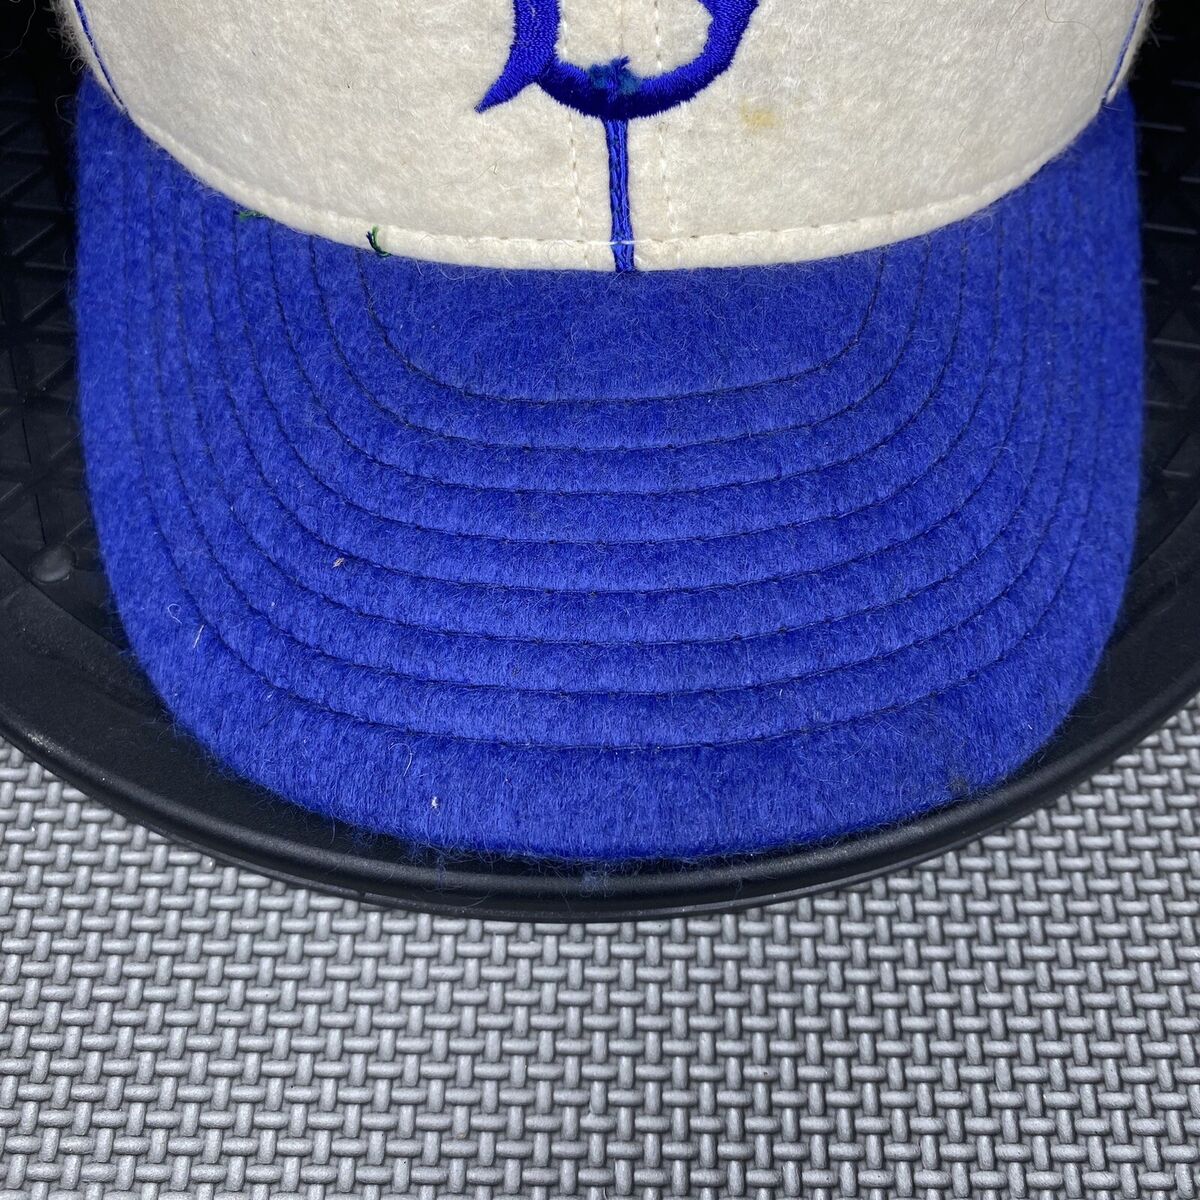 Pin on Brooklyn & LA Dodgers